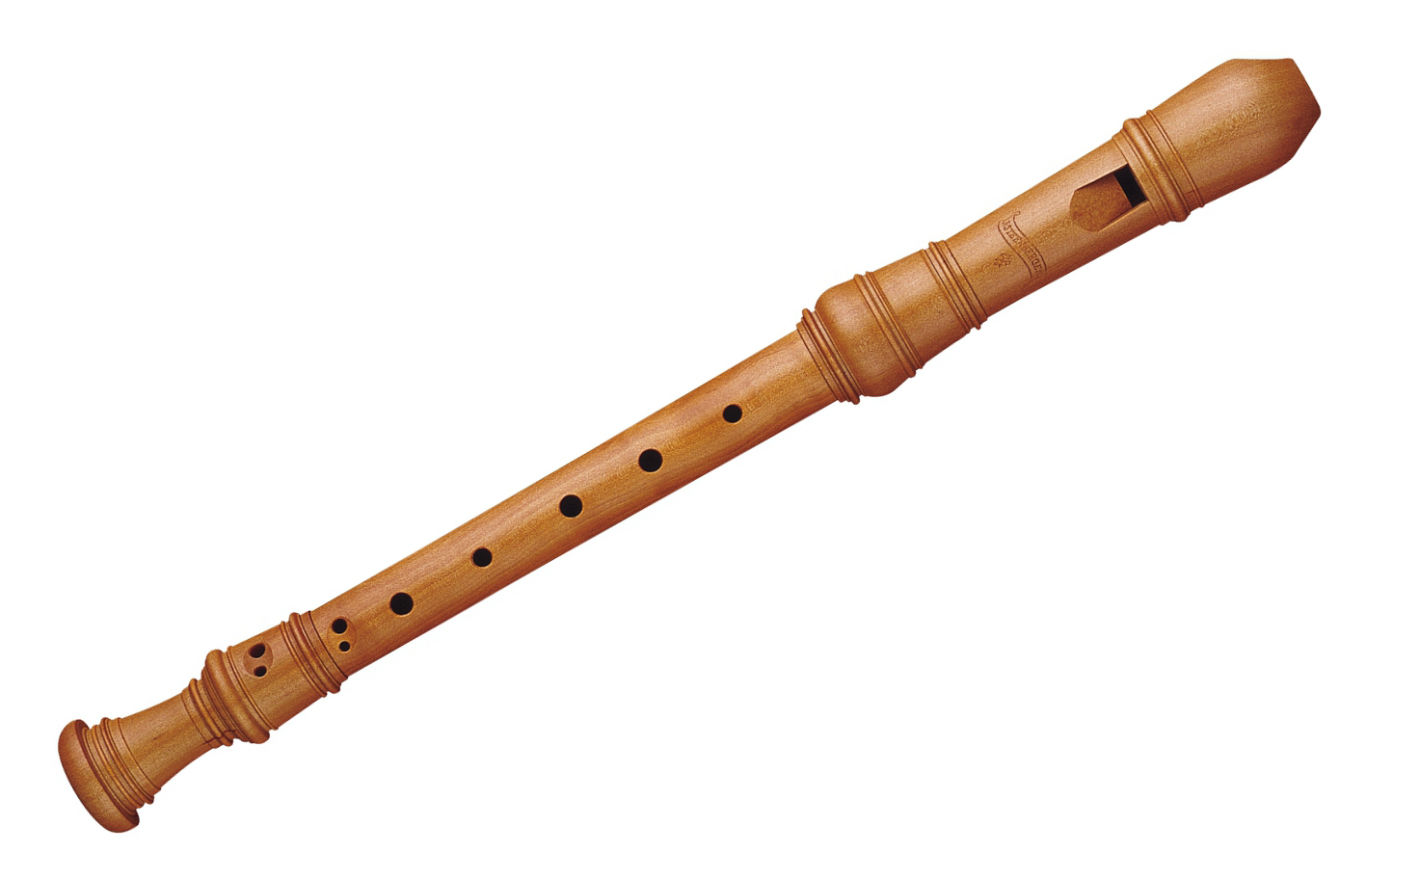 Il moeck 5211, un bellissimo flauto dolce soprano